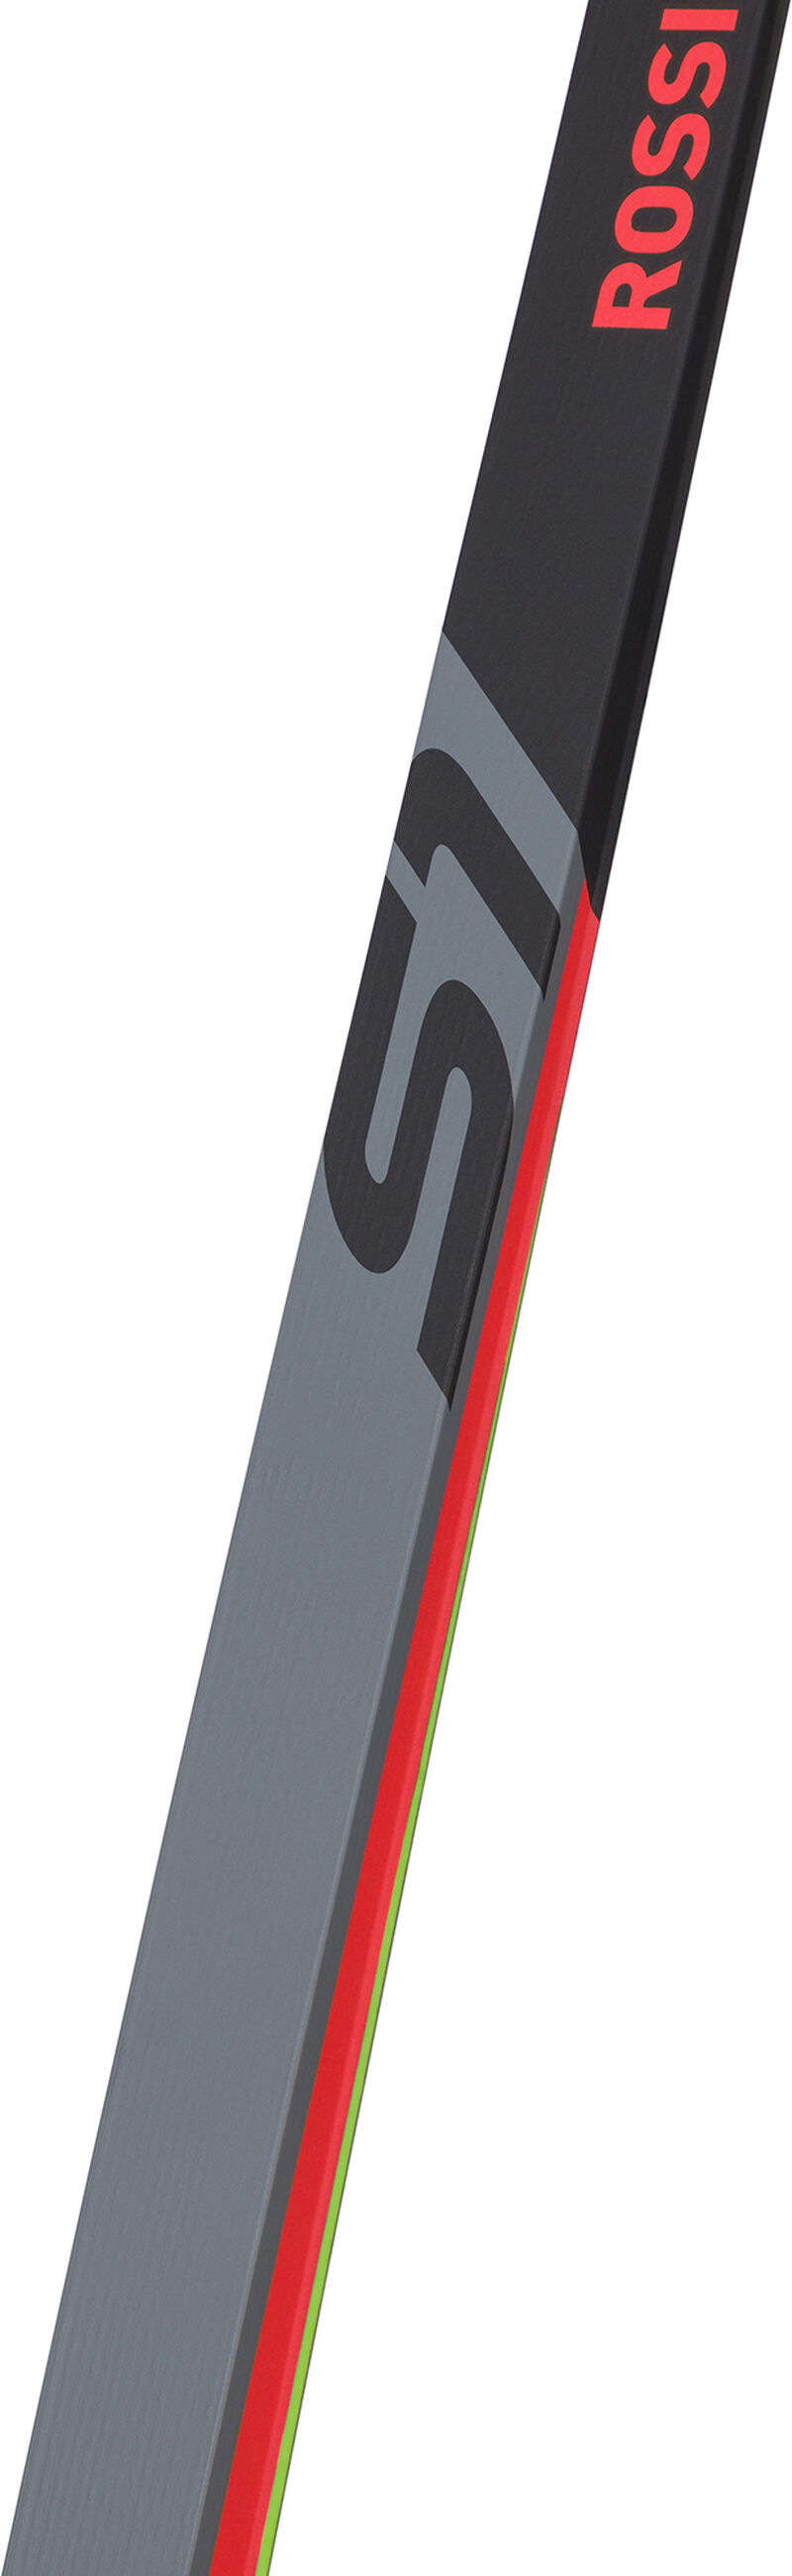 Unisex Nordic Skier X-IUM SKATING PREMIUM+S1 STIFF